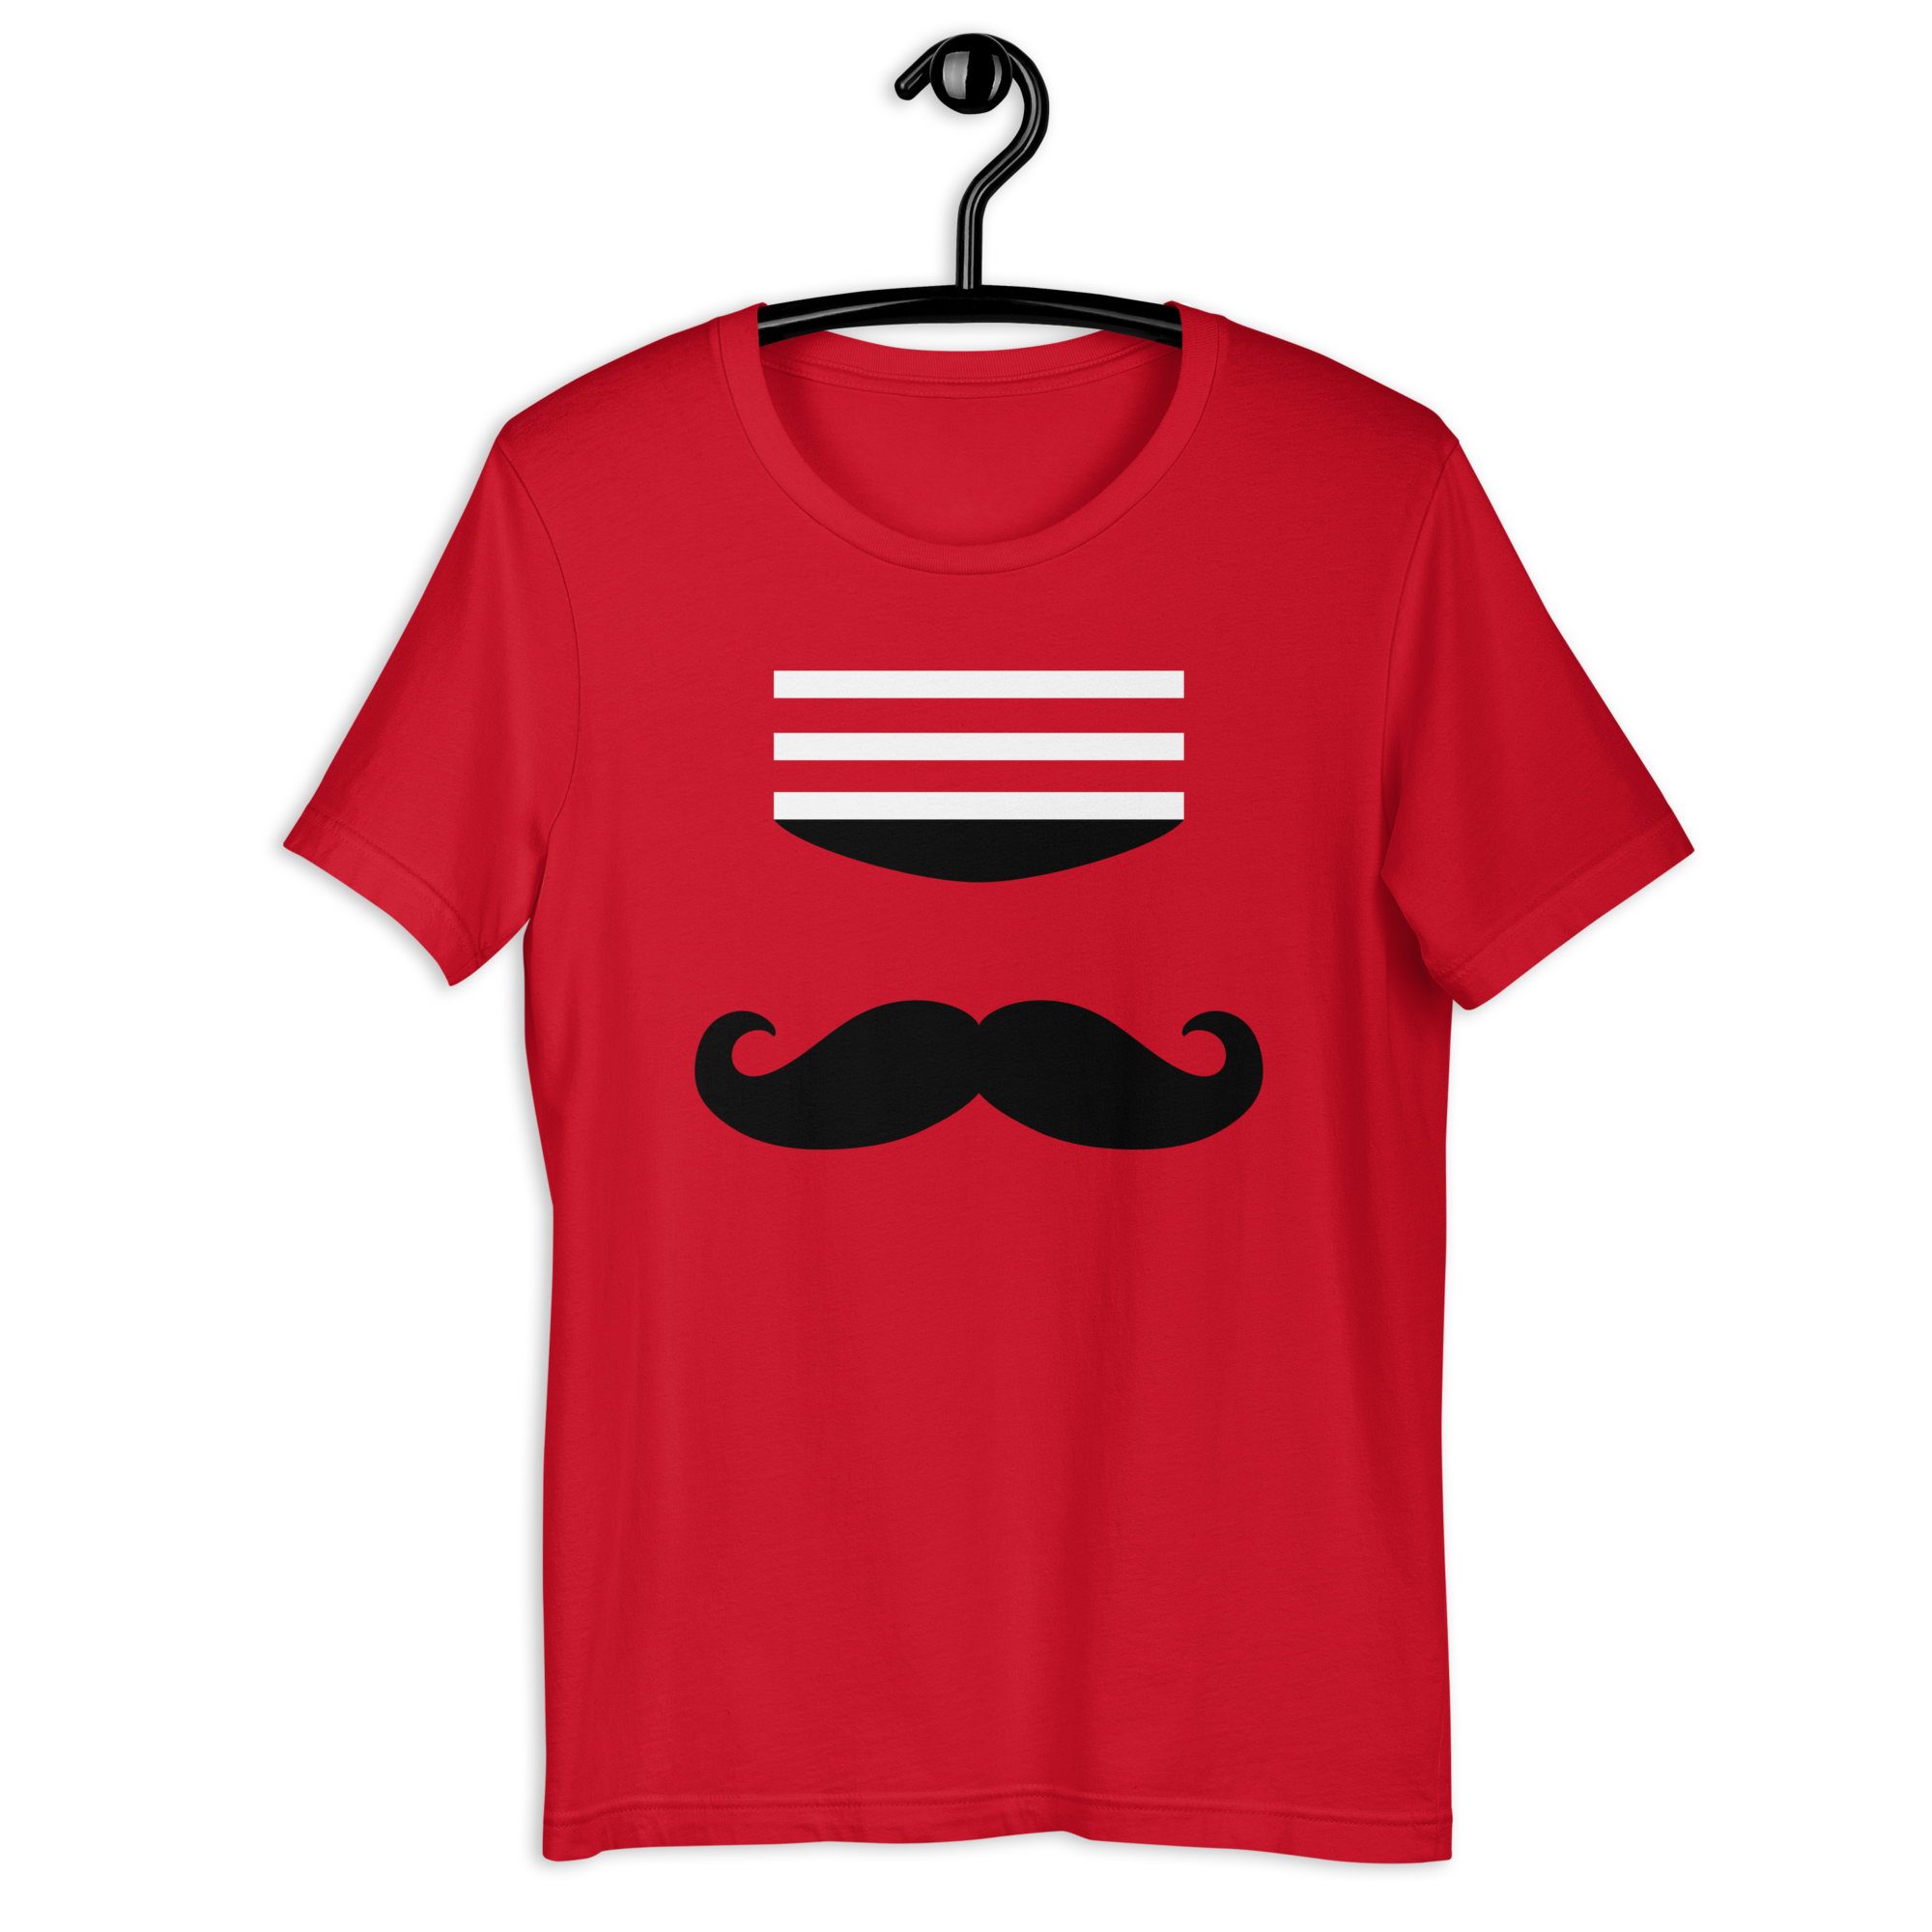 Minimalist Cincinnati Baseball Tshirt Simple Reds Crewneck 